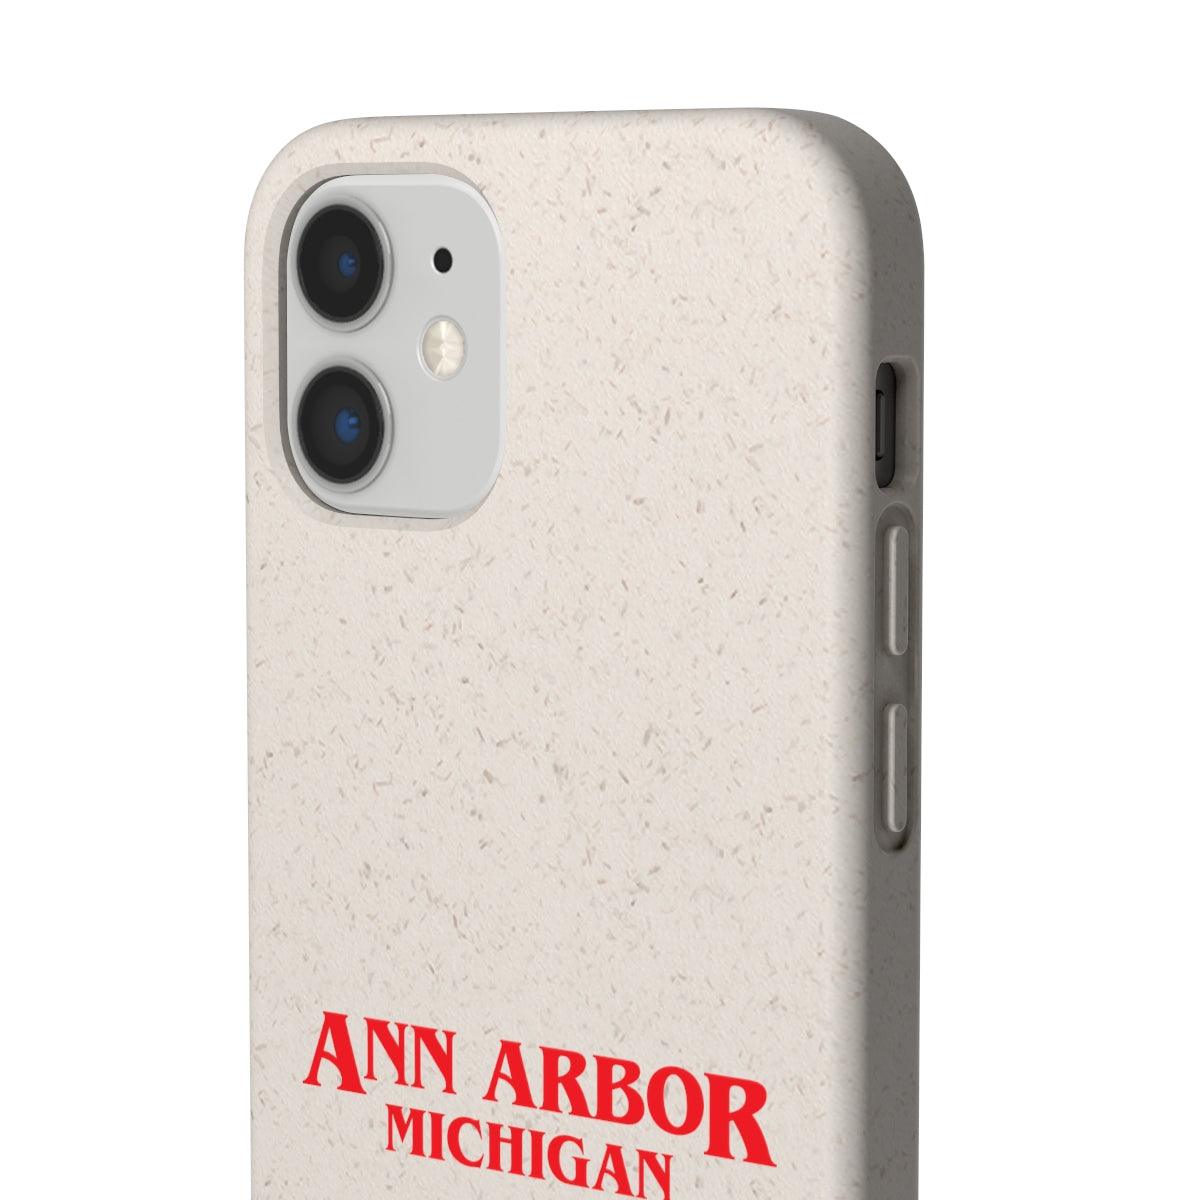 'Ann Arbor Michigan' Phone Cases (1980s Drama Parody) | Android & iPhone - Circumspice Michigan